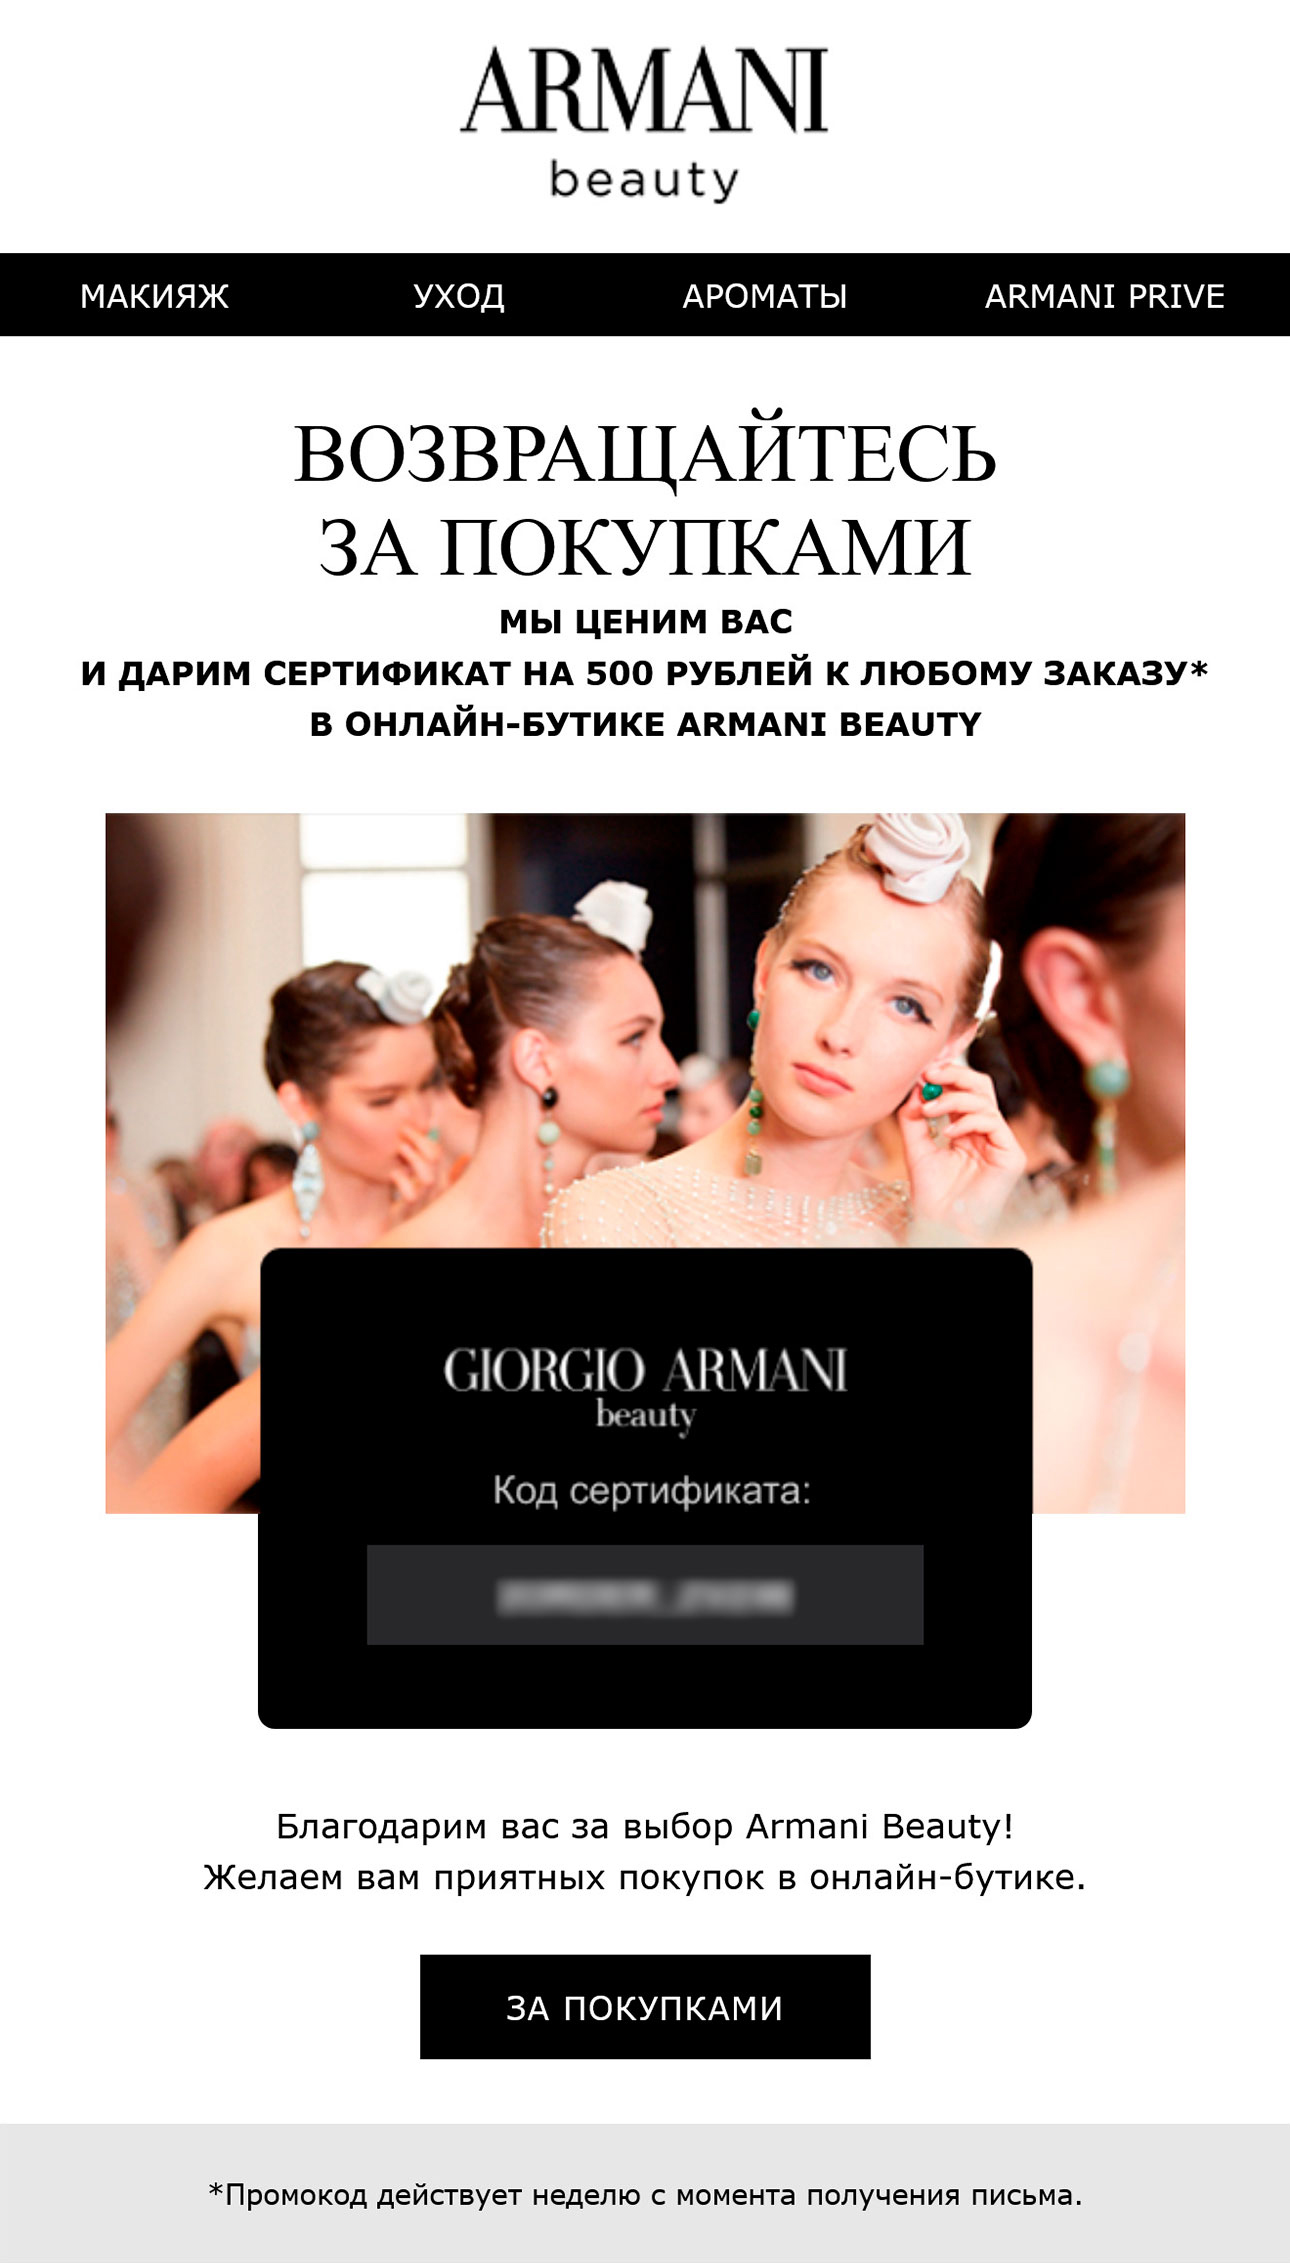 После совершения покупки поддерживаем связь с клиентами Giorgio Armani Beauty